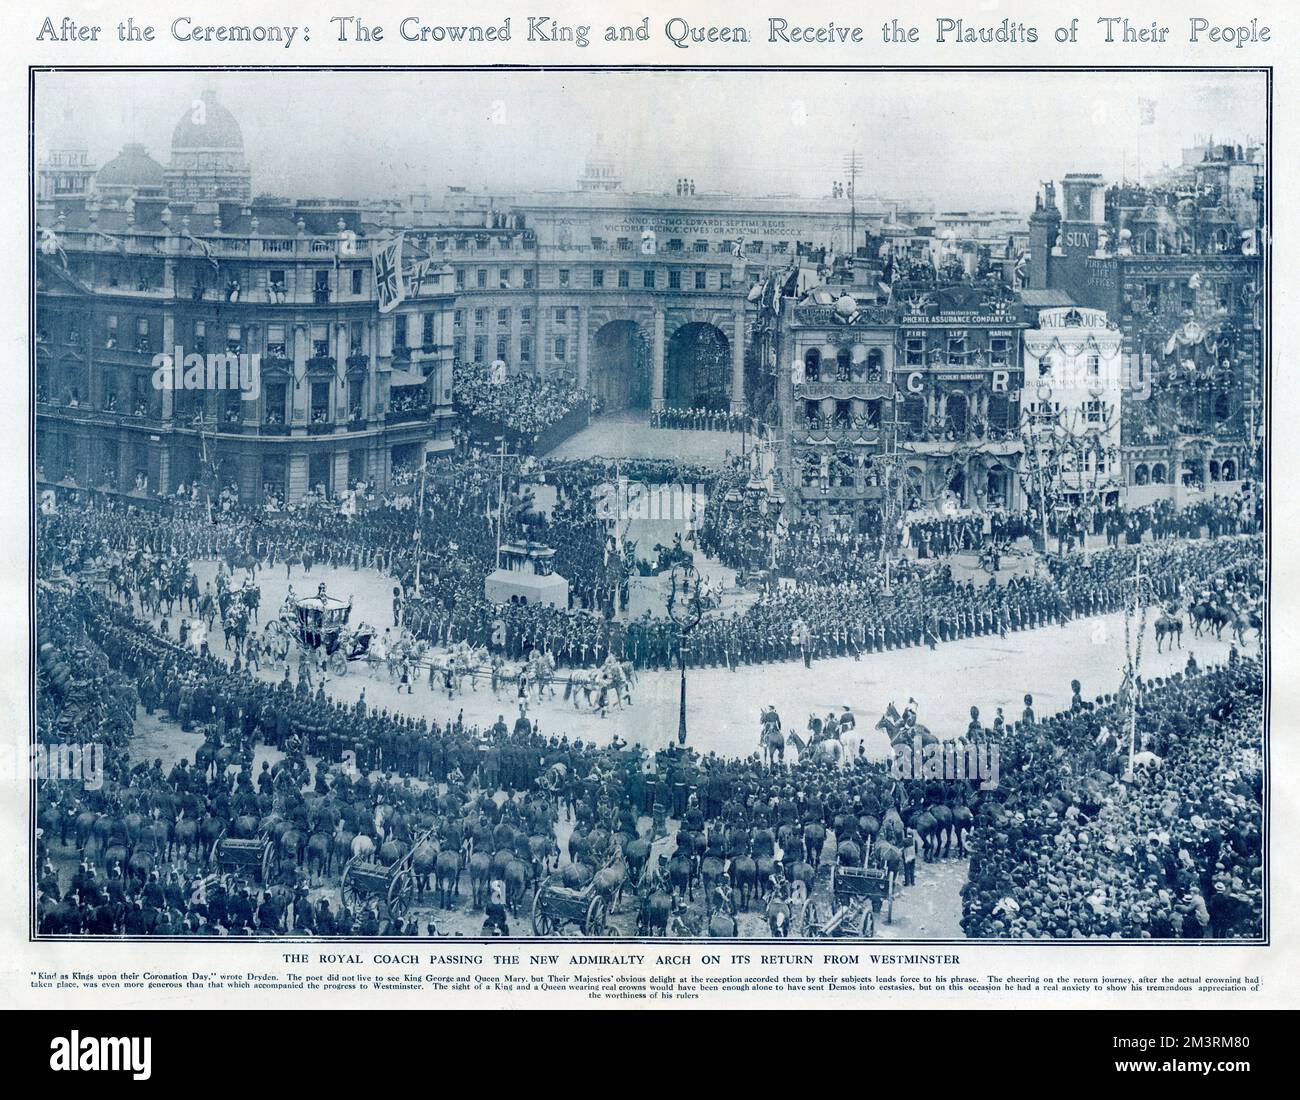 Nach der Zeremonie kehrten der gekrönte König und die gekrönte Königin vom Westminister zurück und erhielten den Jubel von Menschenmassen, die zuschauten. 22.. Juni 1911 Stockfoto